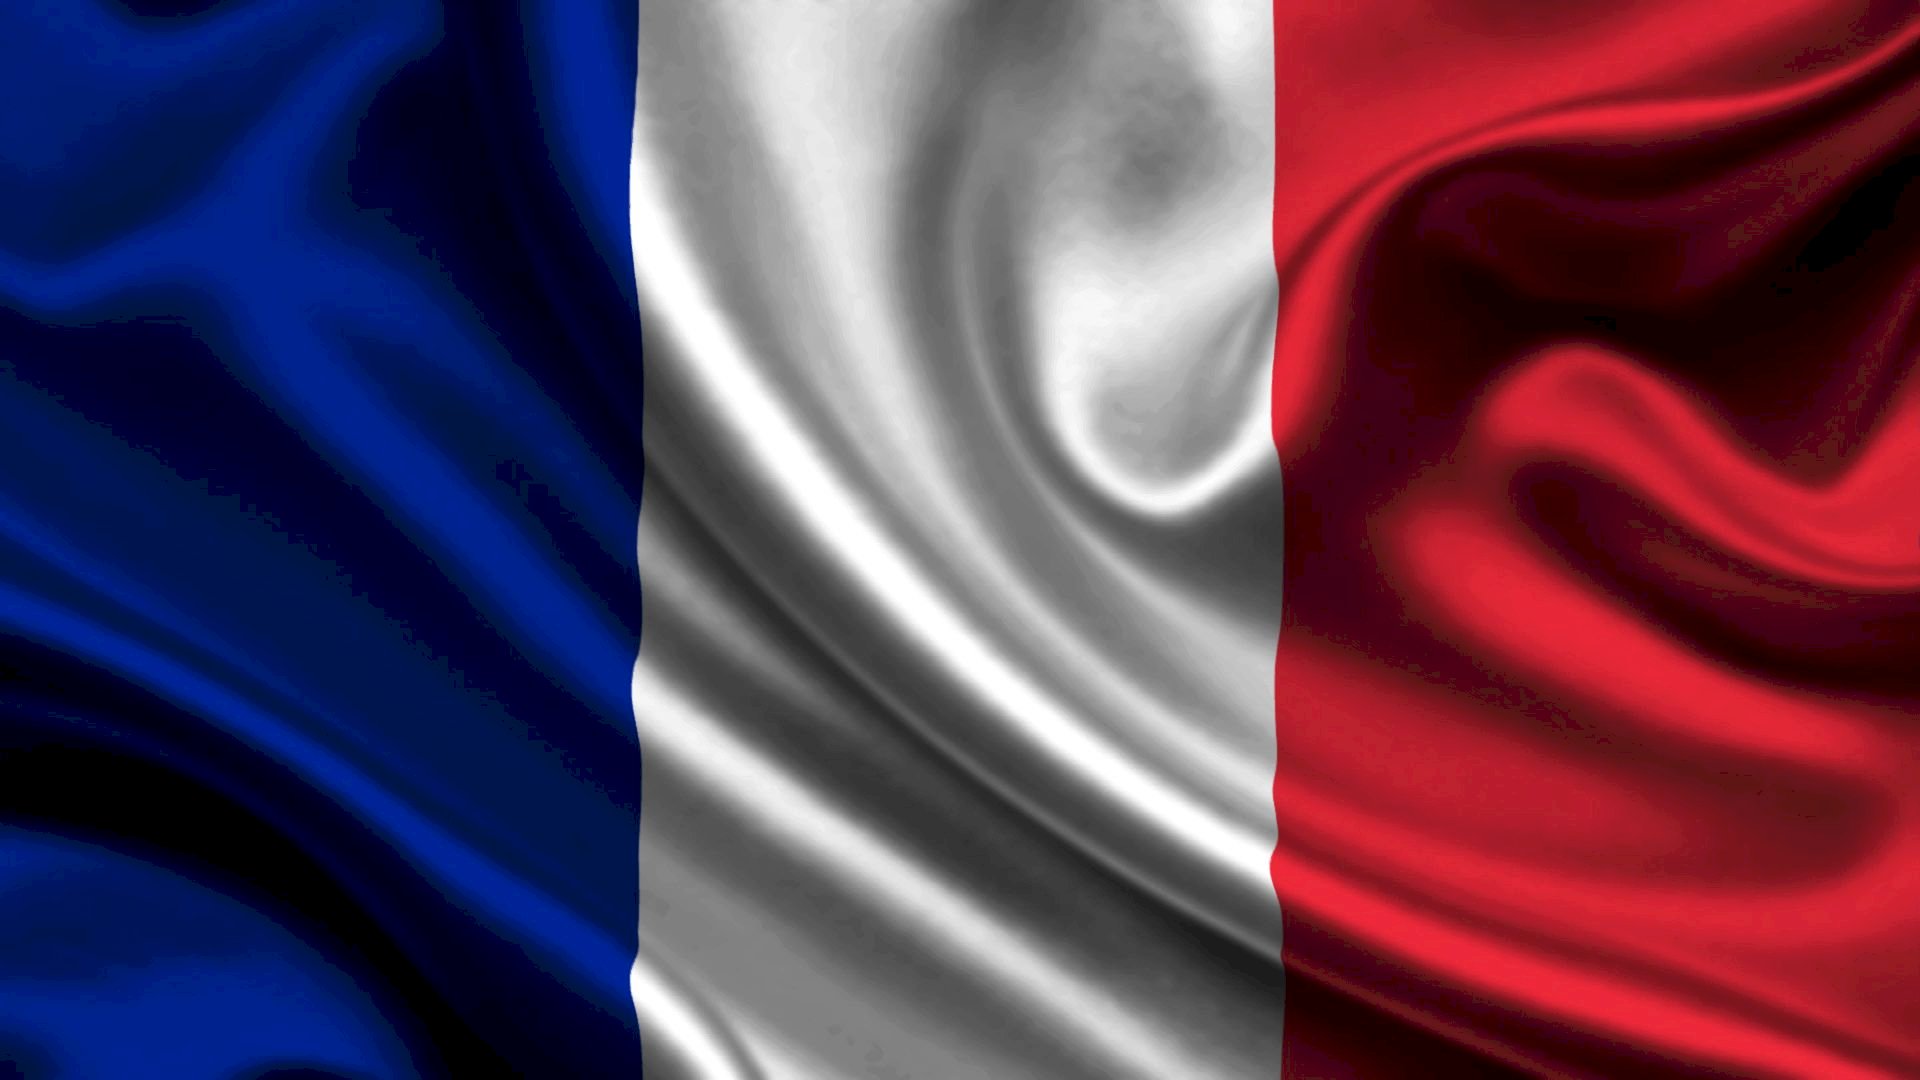 In lá cờ Pháp chất lượng cao - Nếu bạn đang tìm kiếm sự hiện đại và chất lượng cho cờ Pháp của bạn, hãy thử in lá cờ Pháp chất lượng cao. Hình ảnh và màu sắc trên lá cờ có độ bền cao và được in rõ nét và chất lượng. Bạn sẽ hài lòng với sự lựa chọn này.